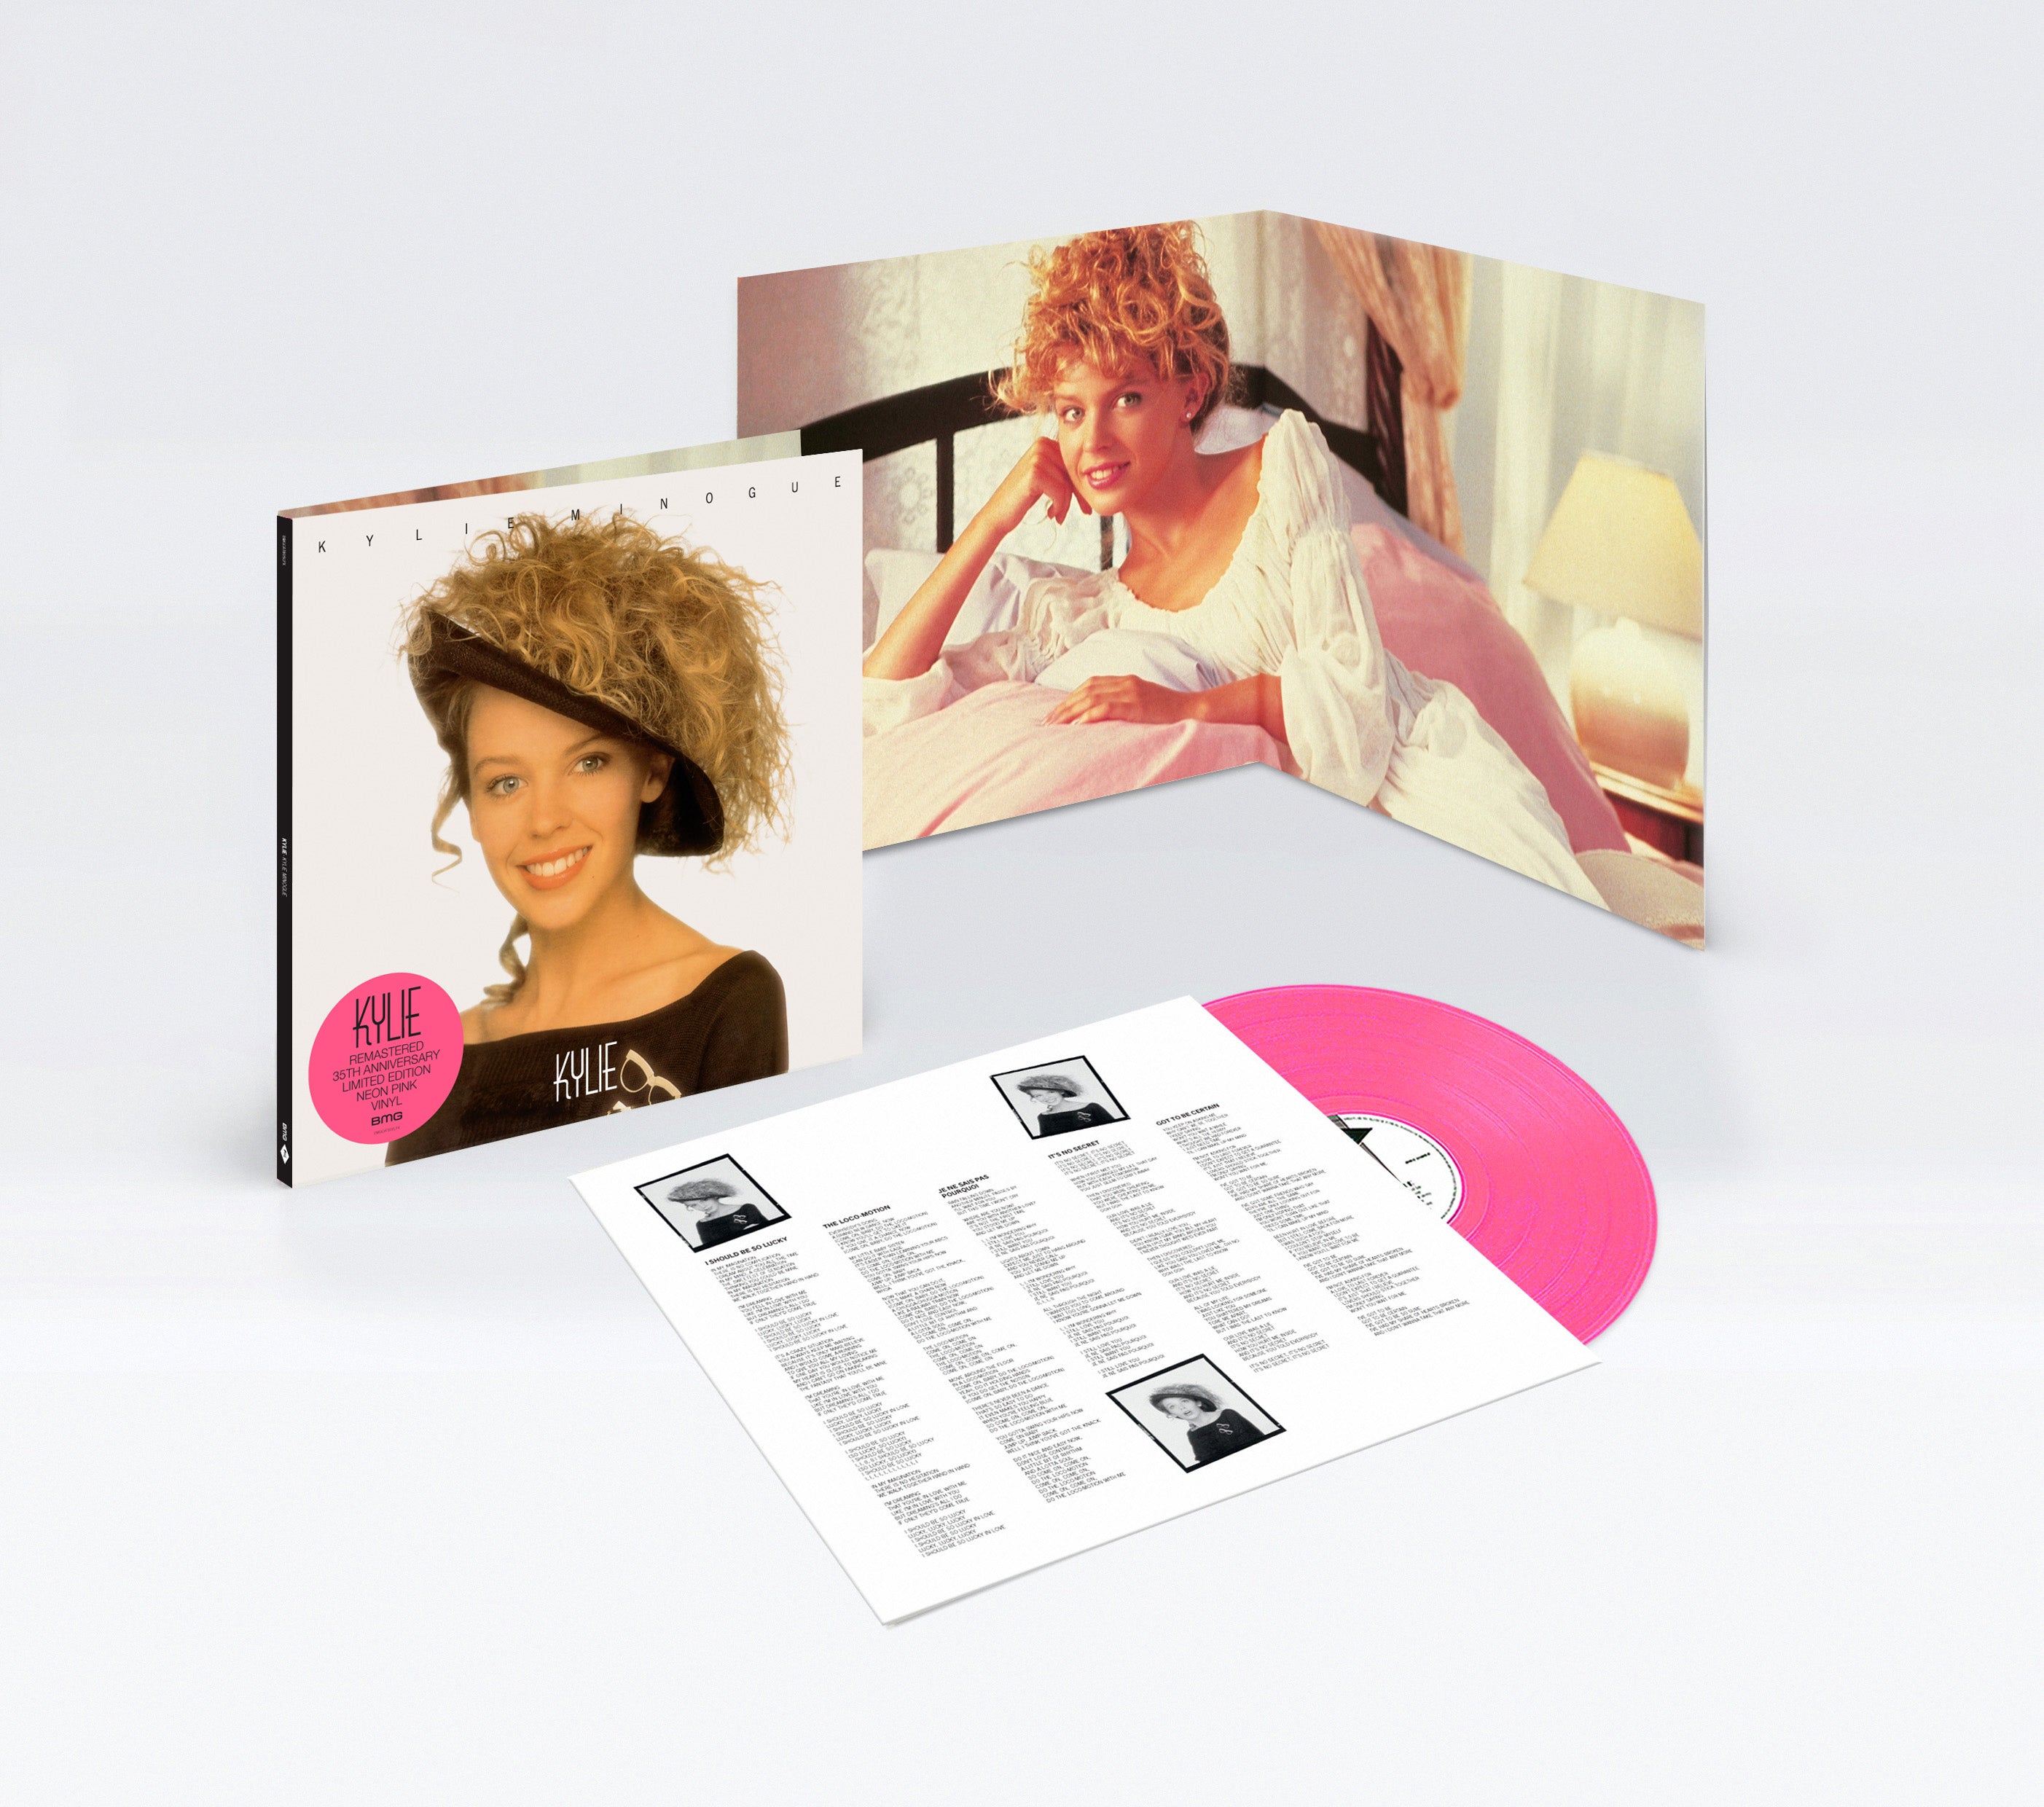 Kylie Minogue - Kylie (35th Anniversary): Remastered Neon Pink Edition Vinyl LP